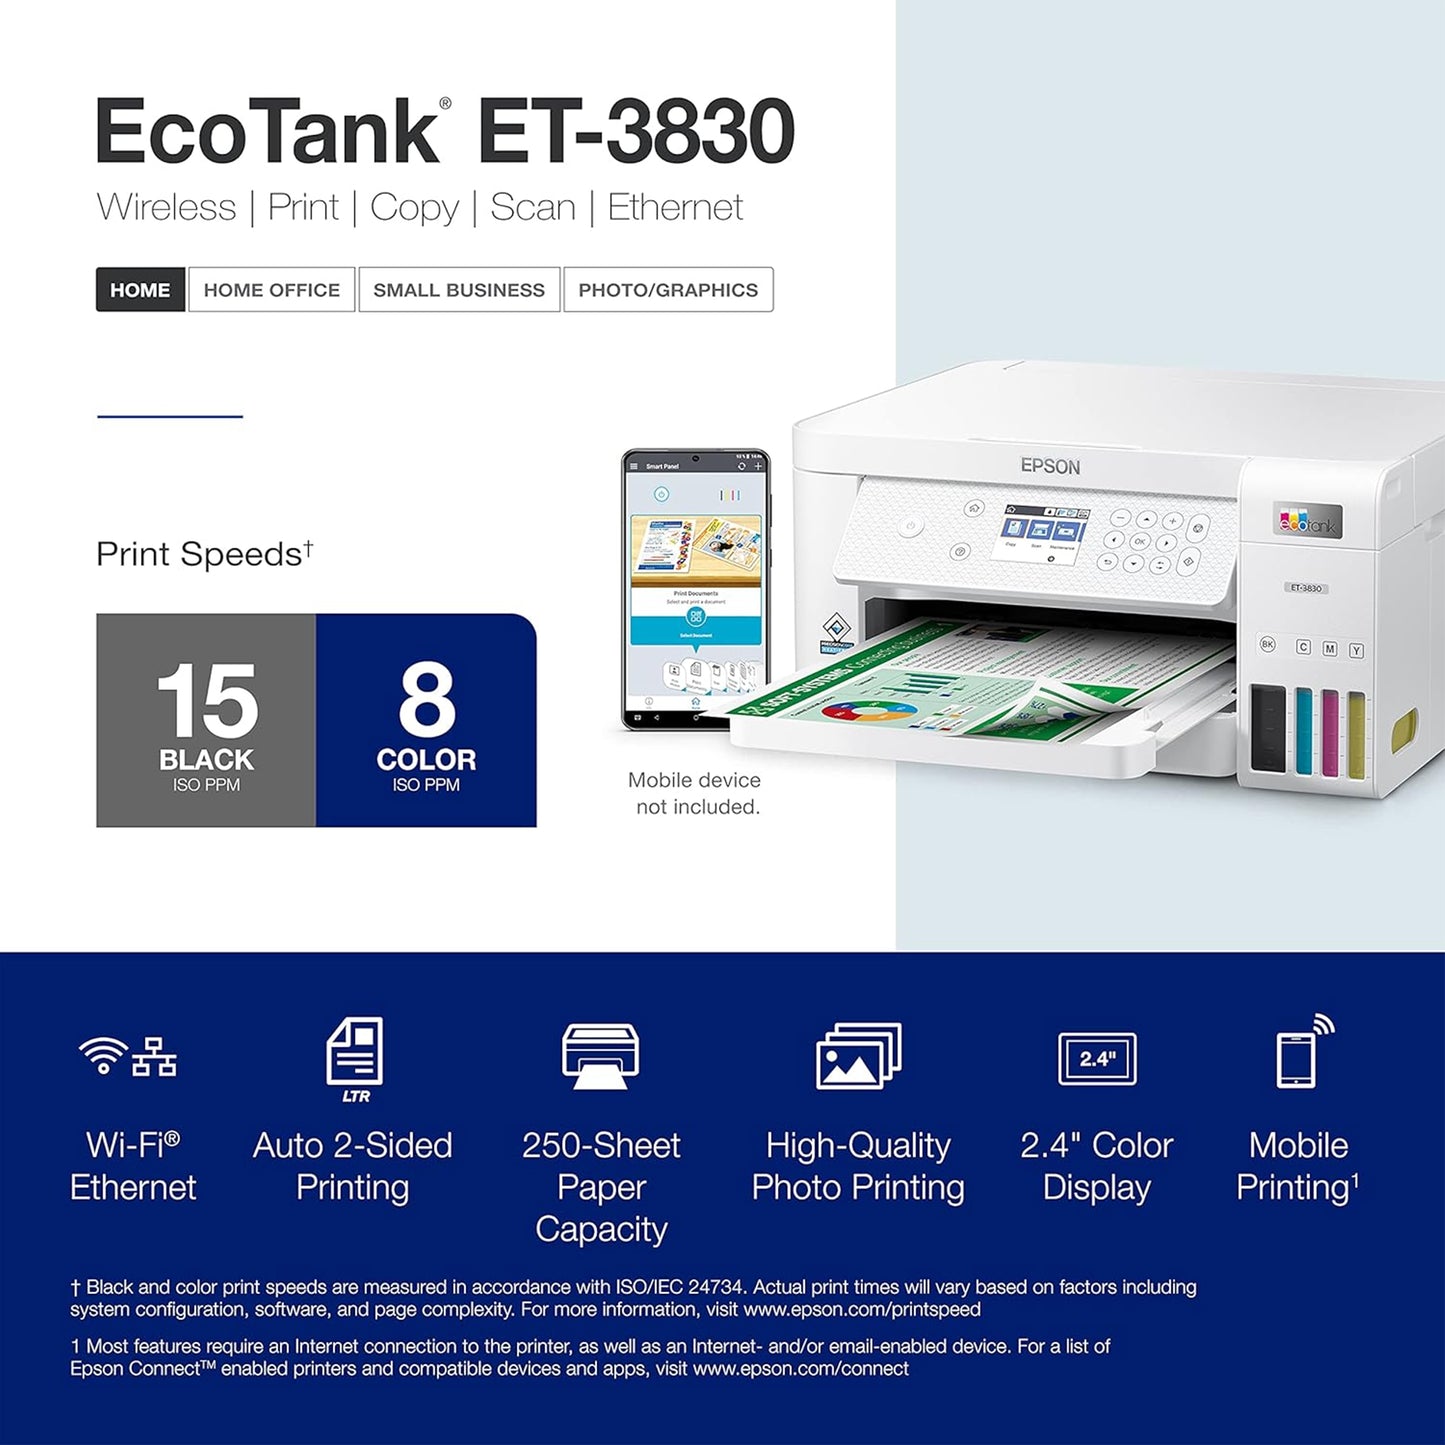 طابعة Epson EcoTank ET-3830 اللاسلكية الملونة الكل في واحد Supertank الخالية من الخراطيش مع المسح الضوئي والنسخ والطباعة التلقائية على الوجهين والإيثرنت - الطابعة المثالية للعائلات المنتجة، باللون الأبيض 